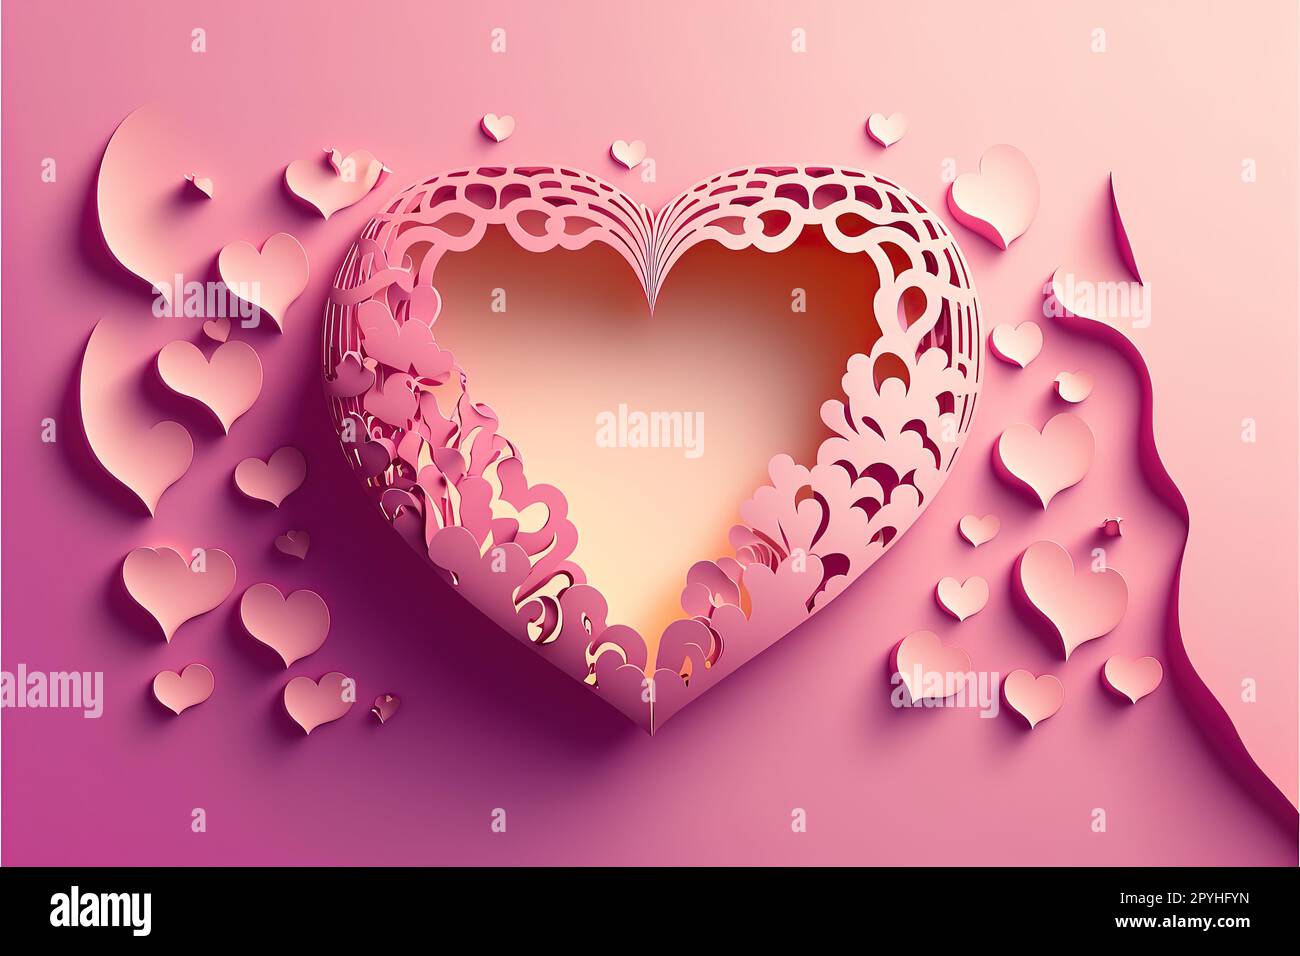 Ausgeschnittenes Vektordesign im Papierstil mit valentinstagsmotiv auf pinkfarbenem, abgestuftem Hintergrund Stockfoto